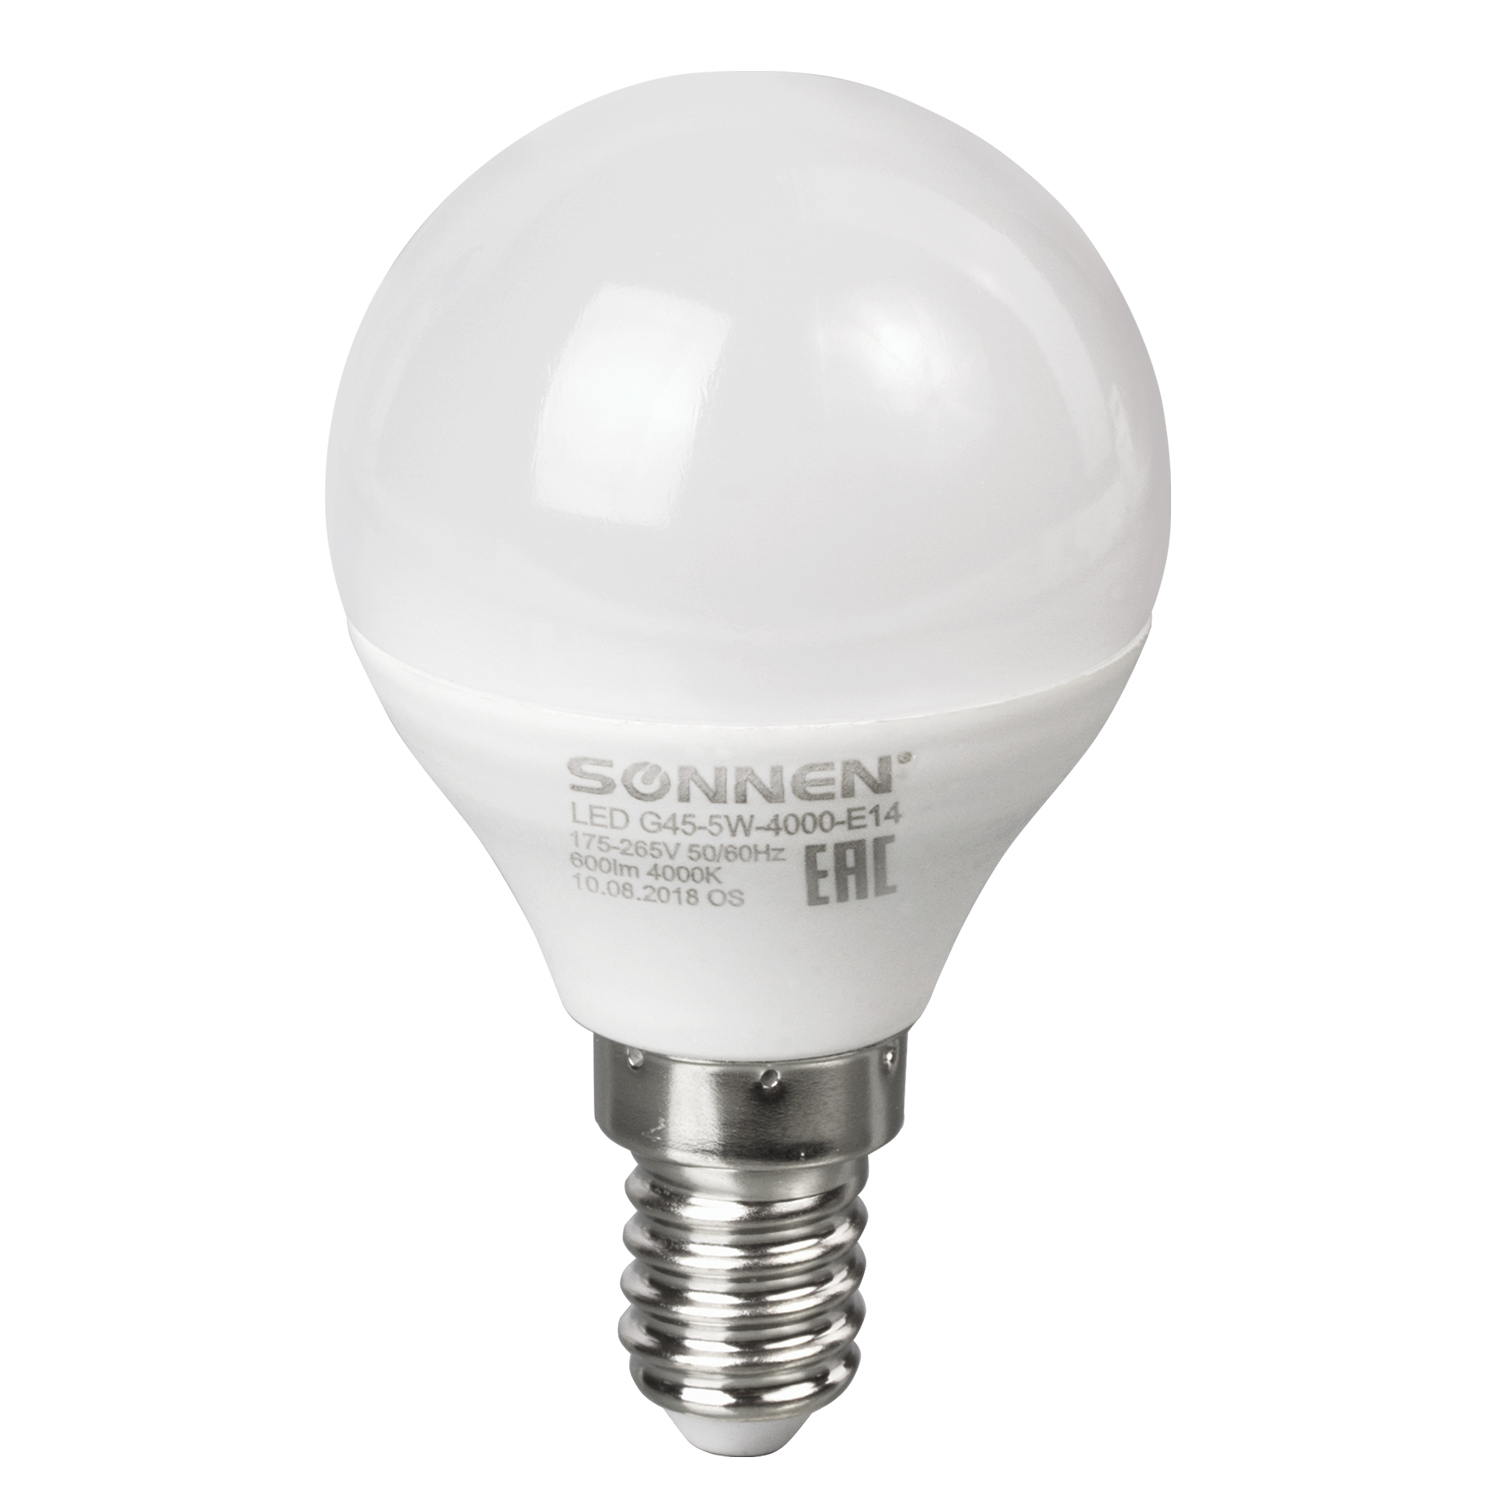 Лампочка SONNEN светодиодная, 5 (40) Вт, цоколь E14, шар, холодный белый свет, LED G45-5W-4000-E14